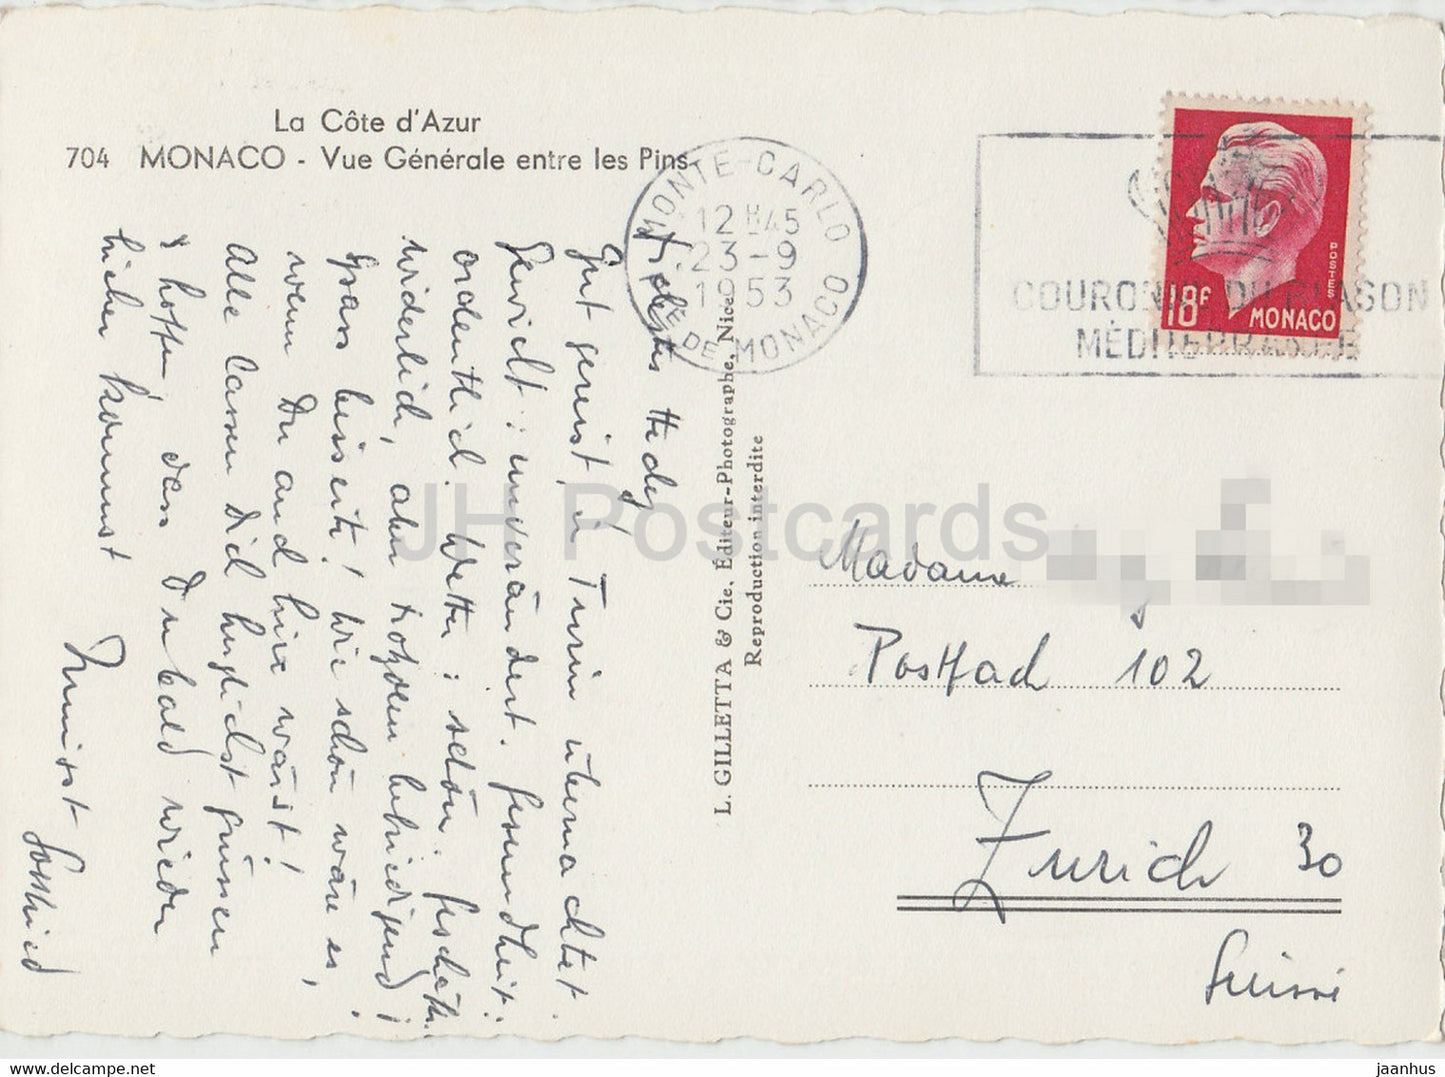 Vue générale entre les Pins - carte postale ancienne - 1953 - Monaco - occasion